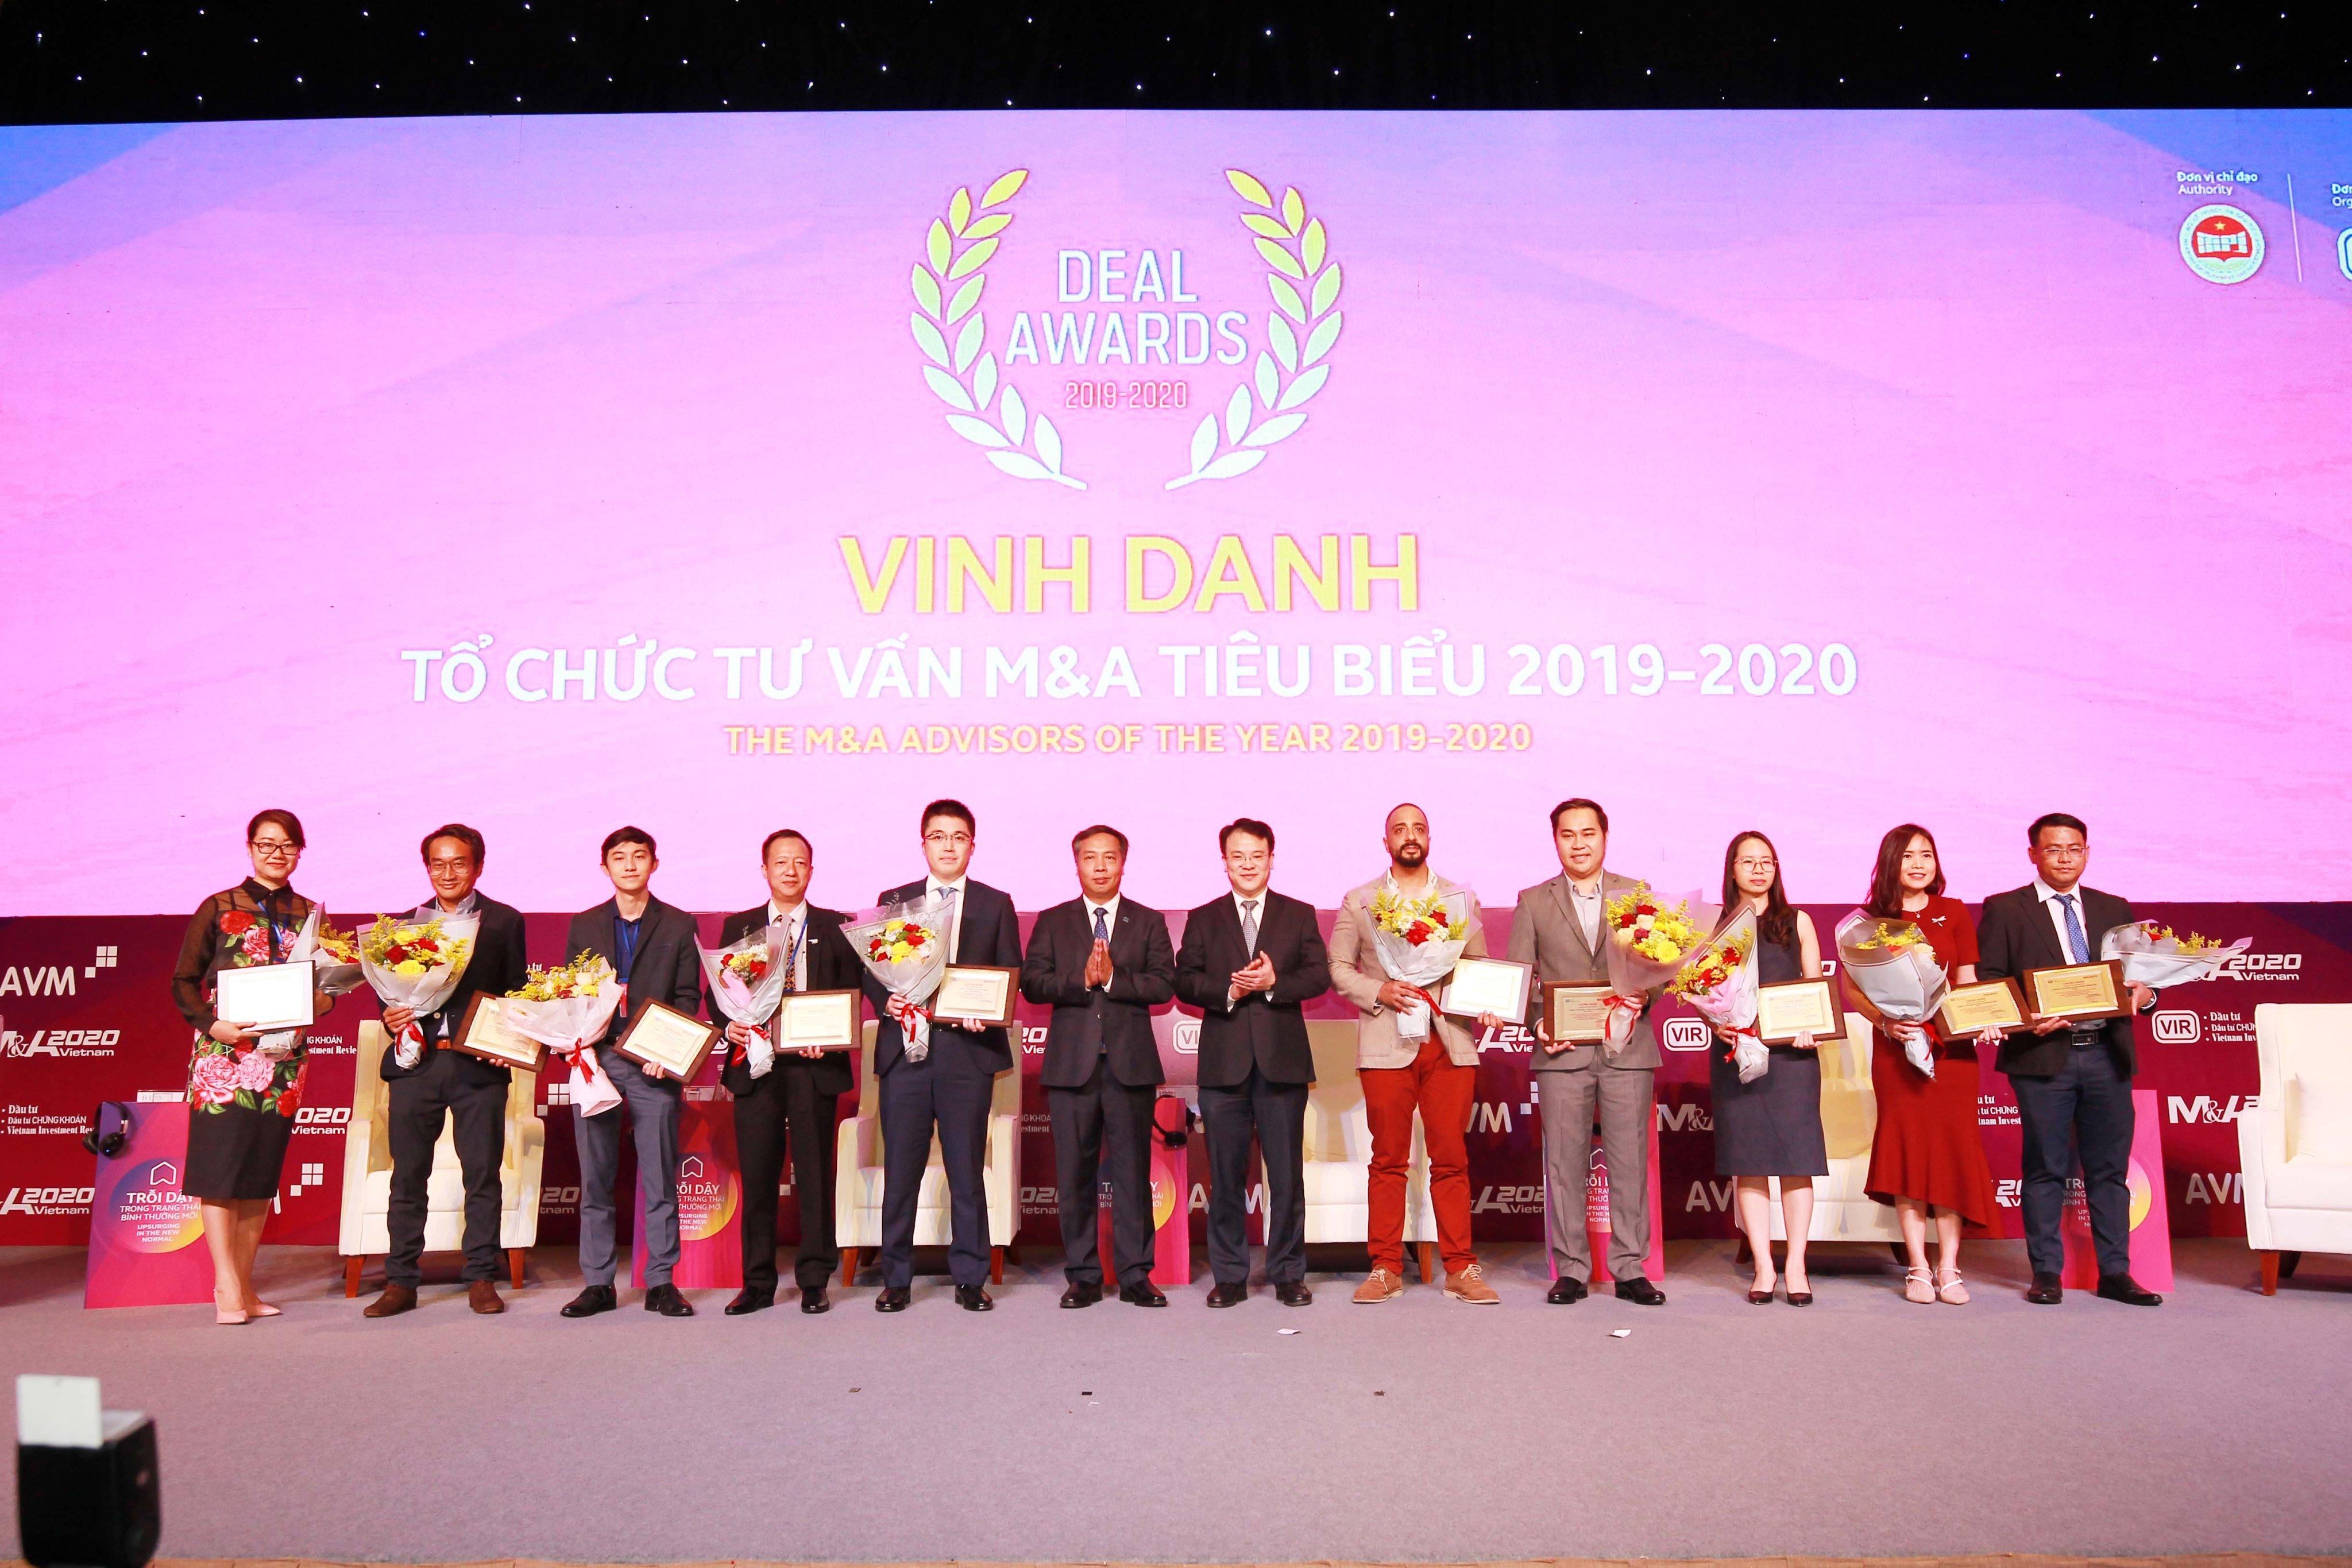 Chứng khoán Bảo Việt nối dài chuỗi giải thưởng 2020